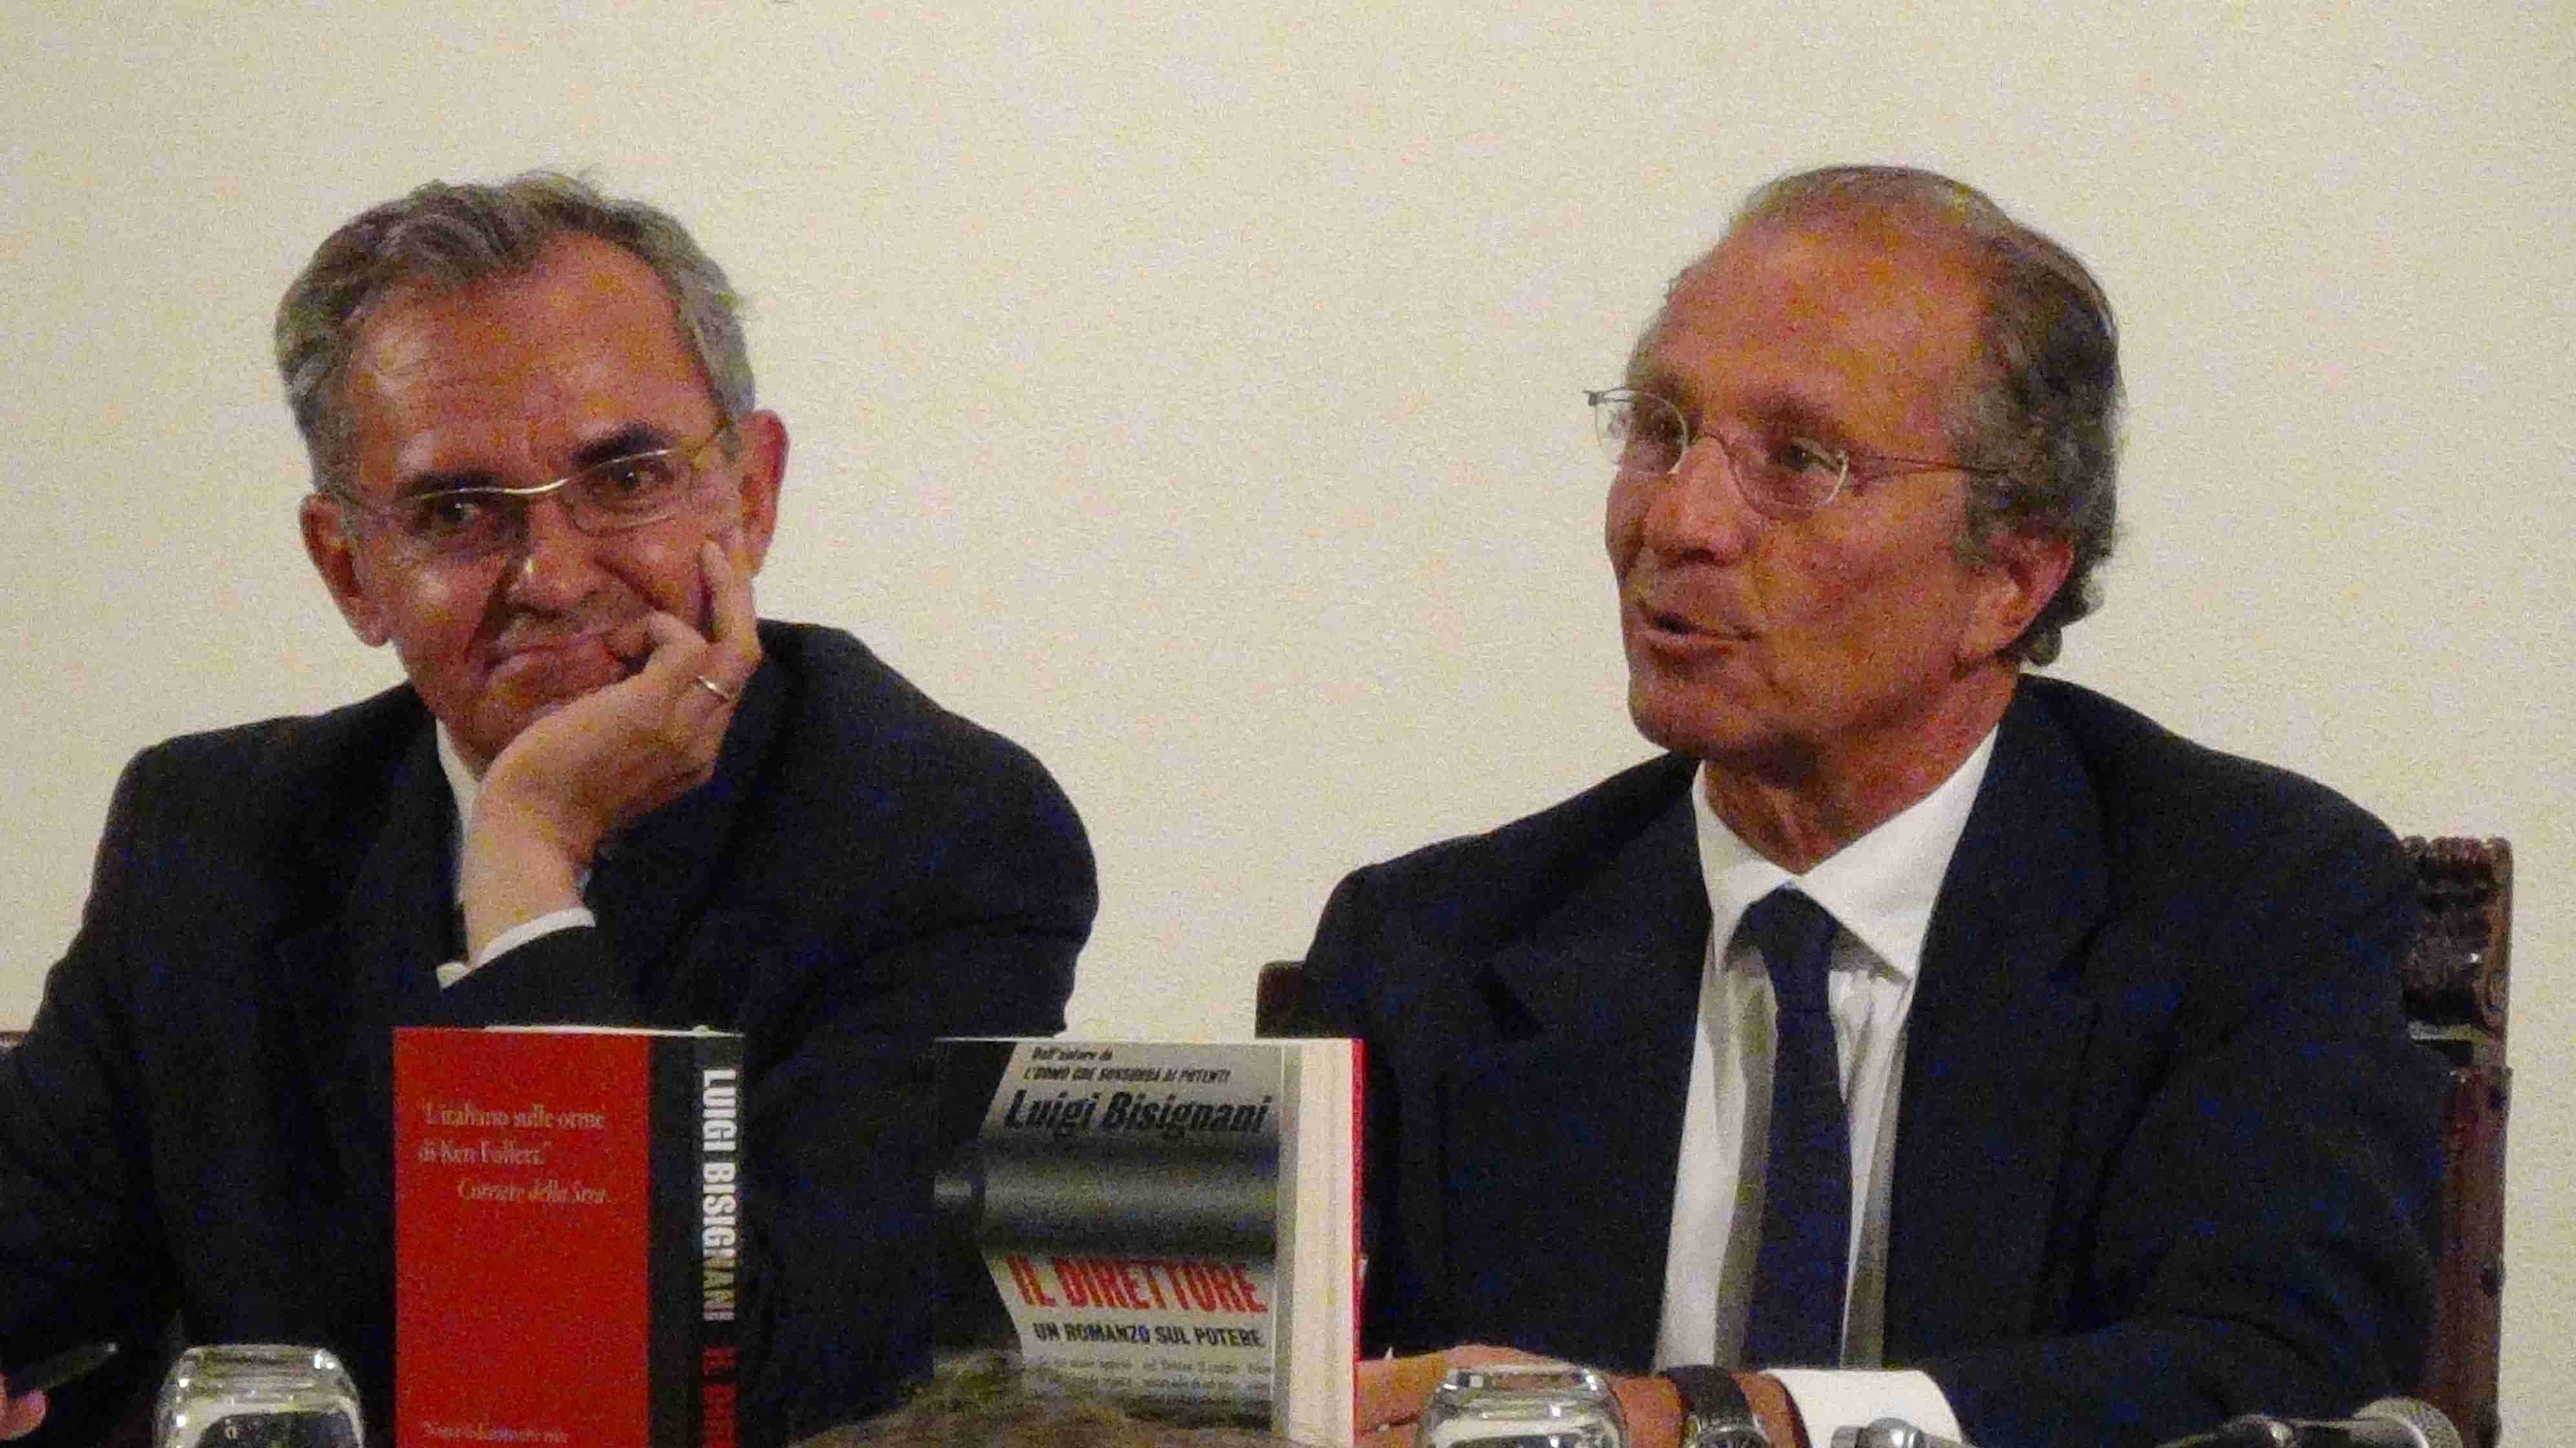 Luigi Bisignani presenta “Il Direttore” al “Tè con Biscotti”.   Liguori: “Italia paese dell’anormale che diventa normale”